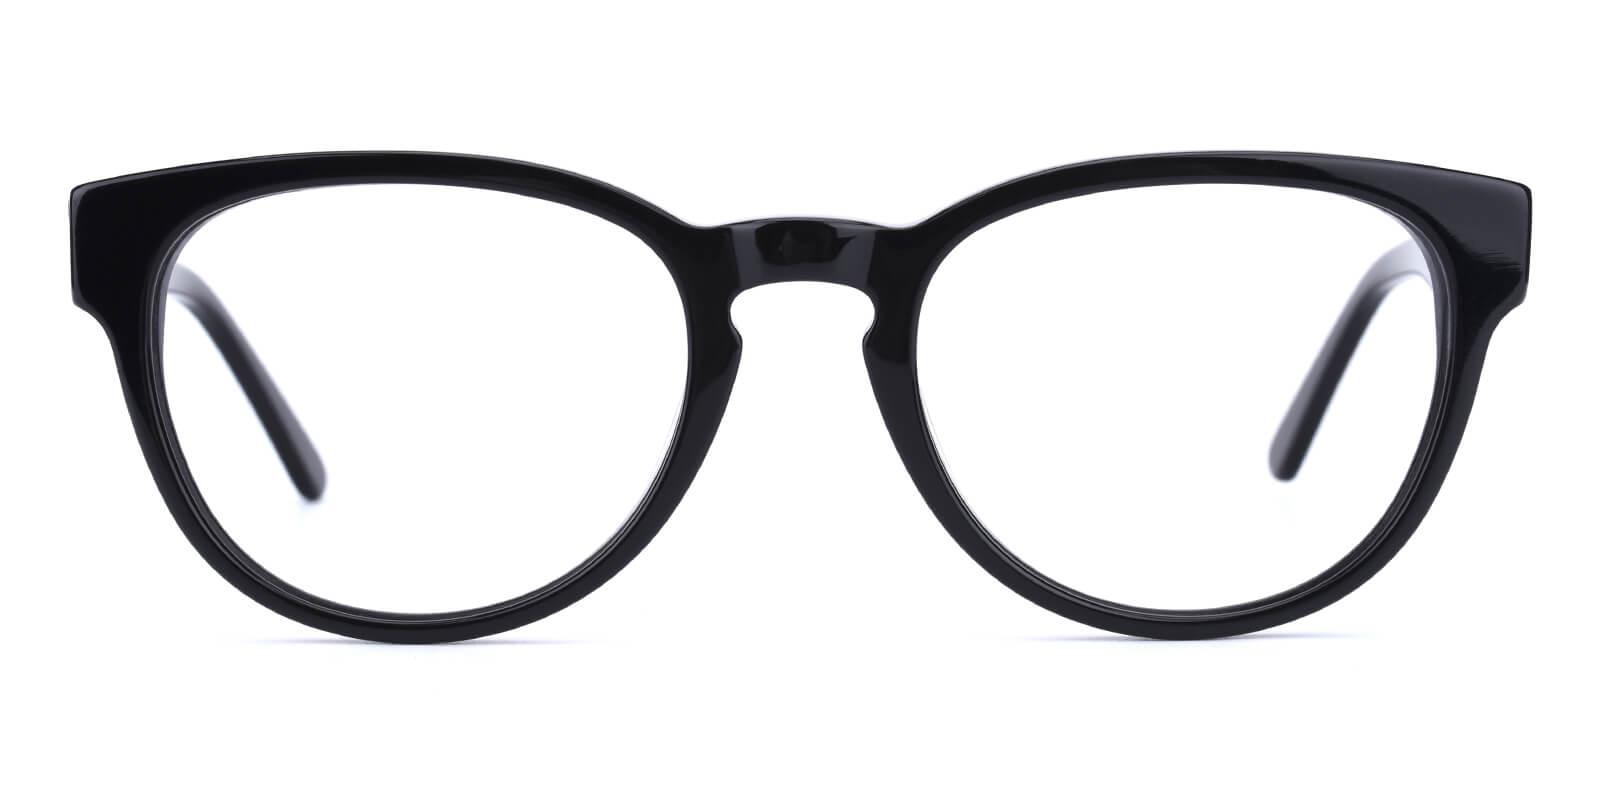 Bringmo-Black-Round / Cat-Acetate-Eyeglasses-detail